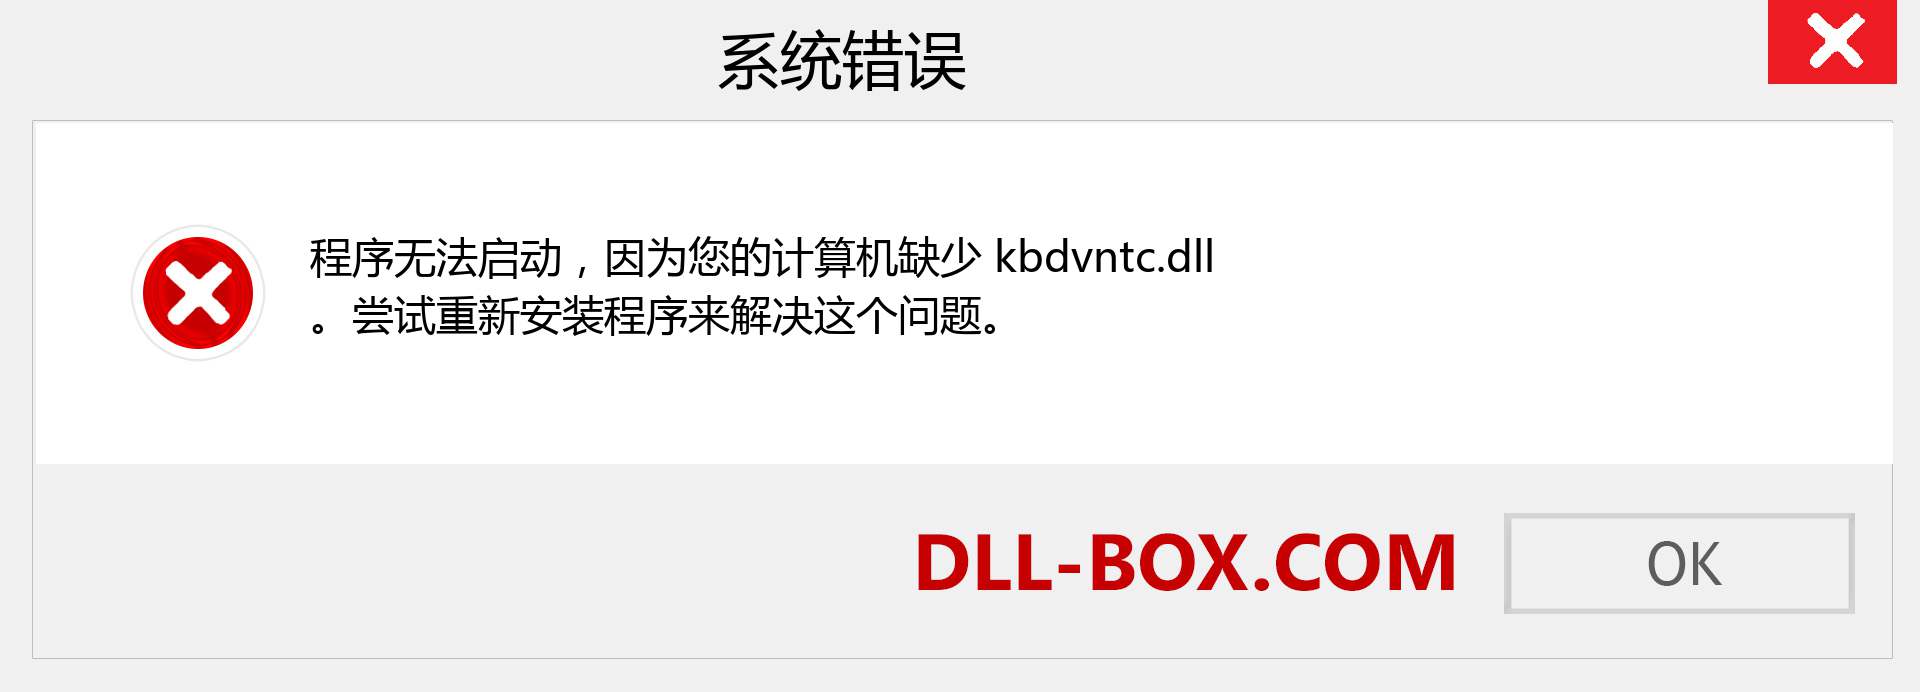 kbdvntc.dll 文件丢失？。 适用于 Windows 7、8、10 的下载 - 修复 Windows、照片、图像上的 kbdvntc dll 丢失错误